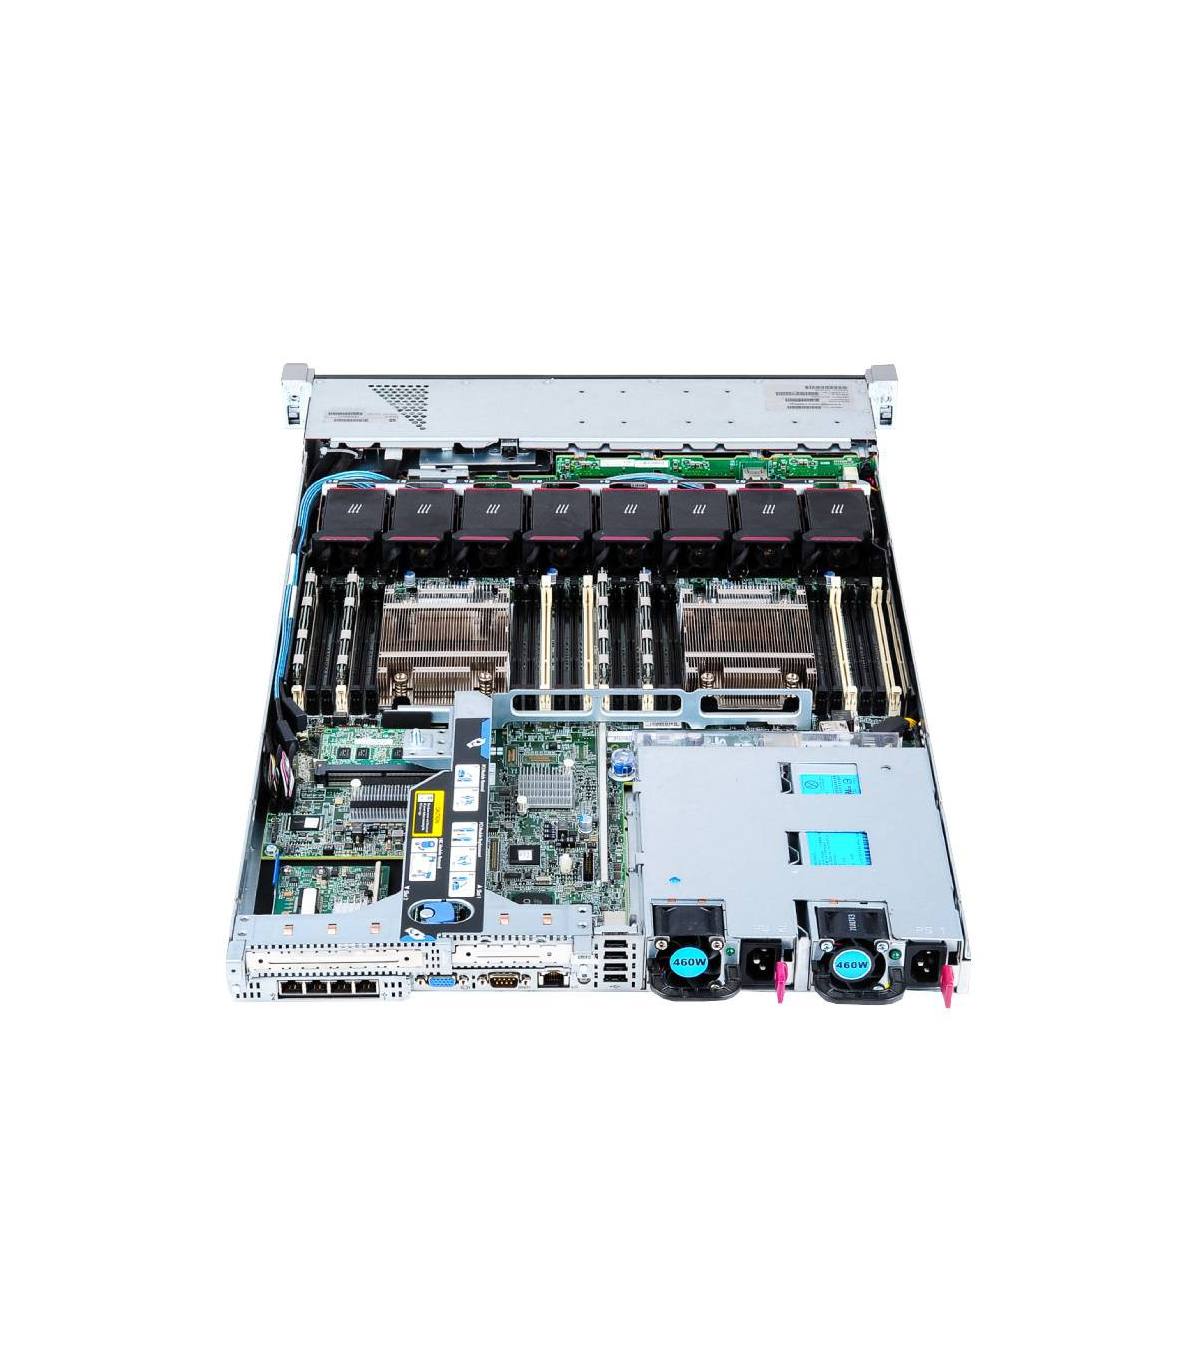 HP DL360P G8 2X8C E5-2650 V2 2.60 GHz 32GB 8X2,5 P420i 1GB 2X460W ILO4